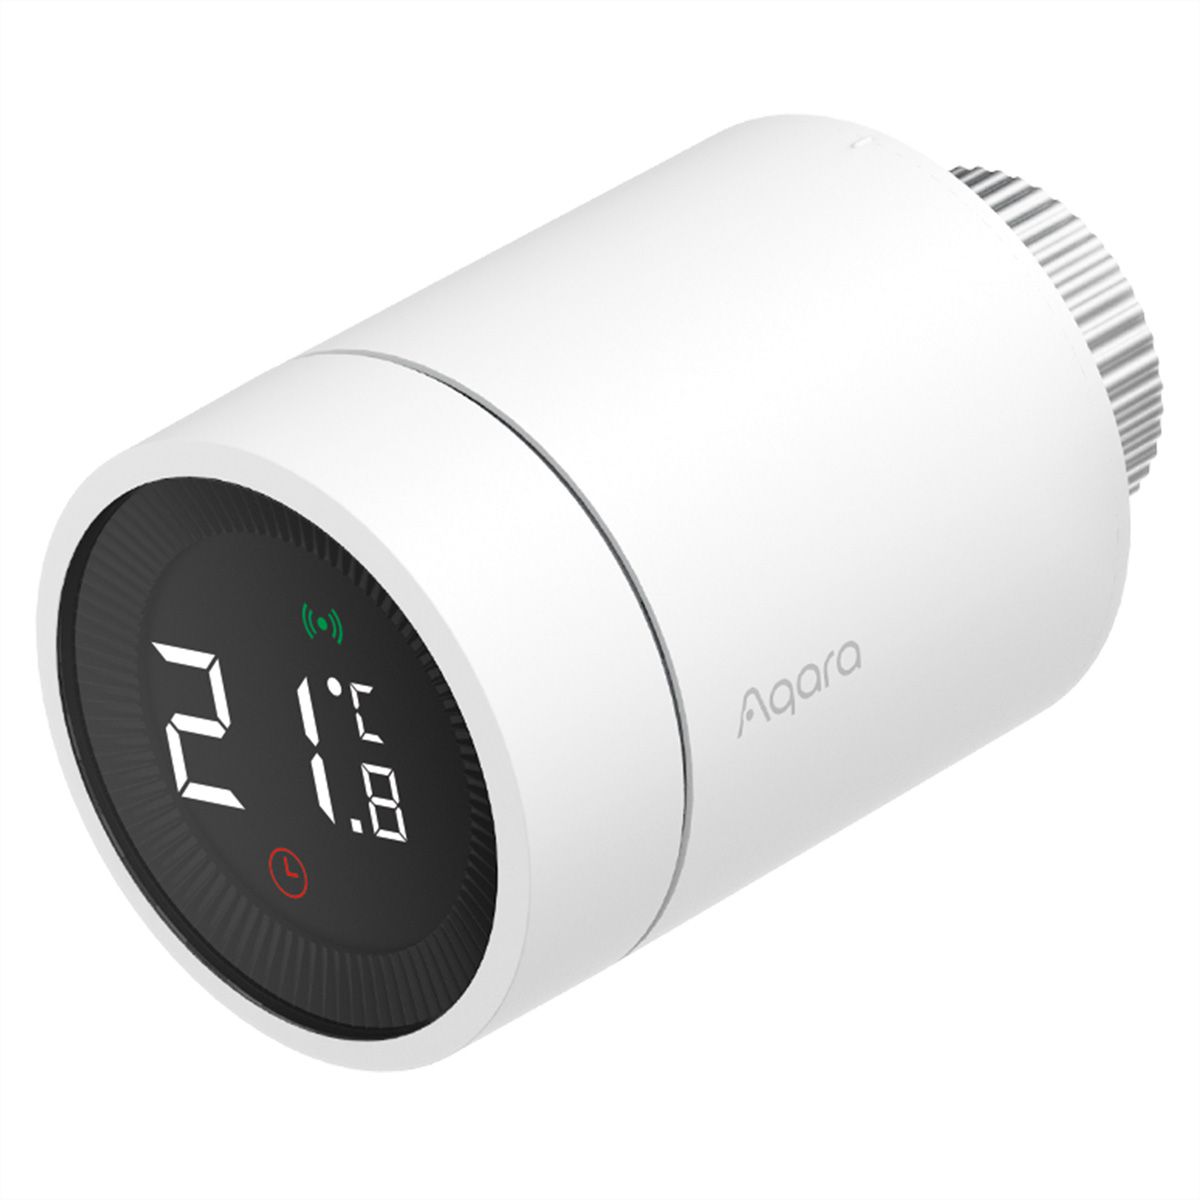 Aqara Smart Radiator Thermostat E1 - COOL AG